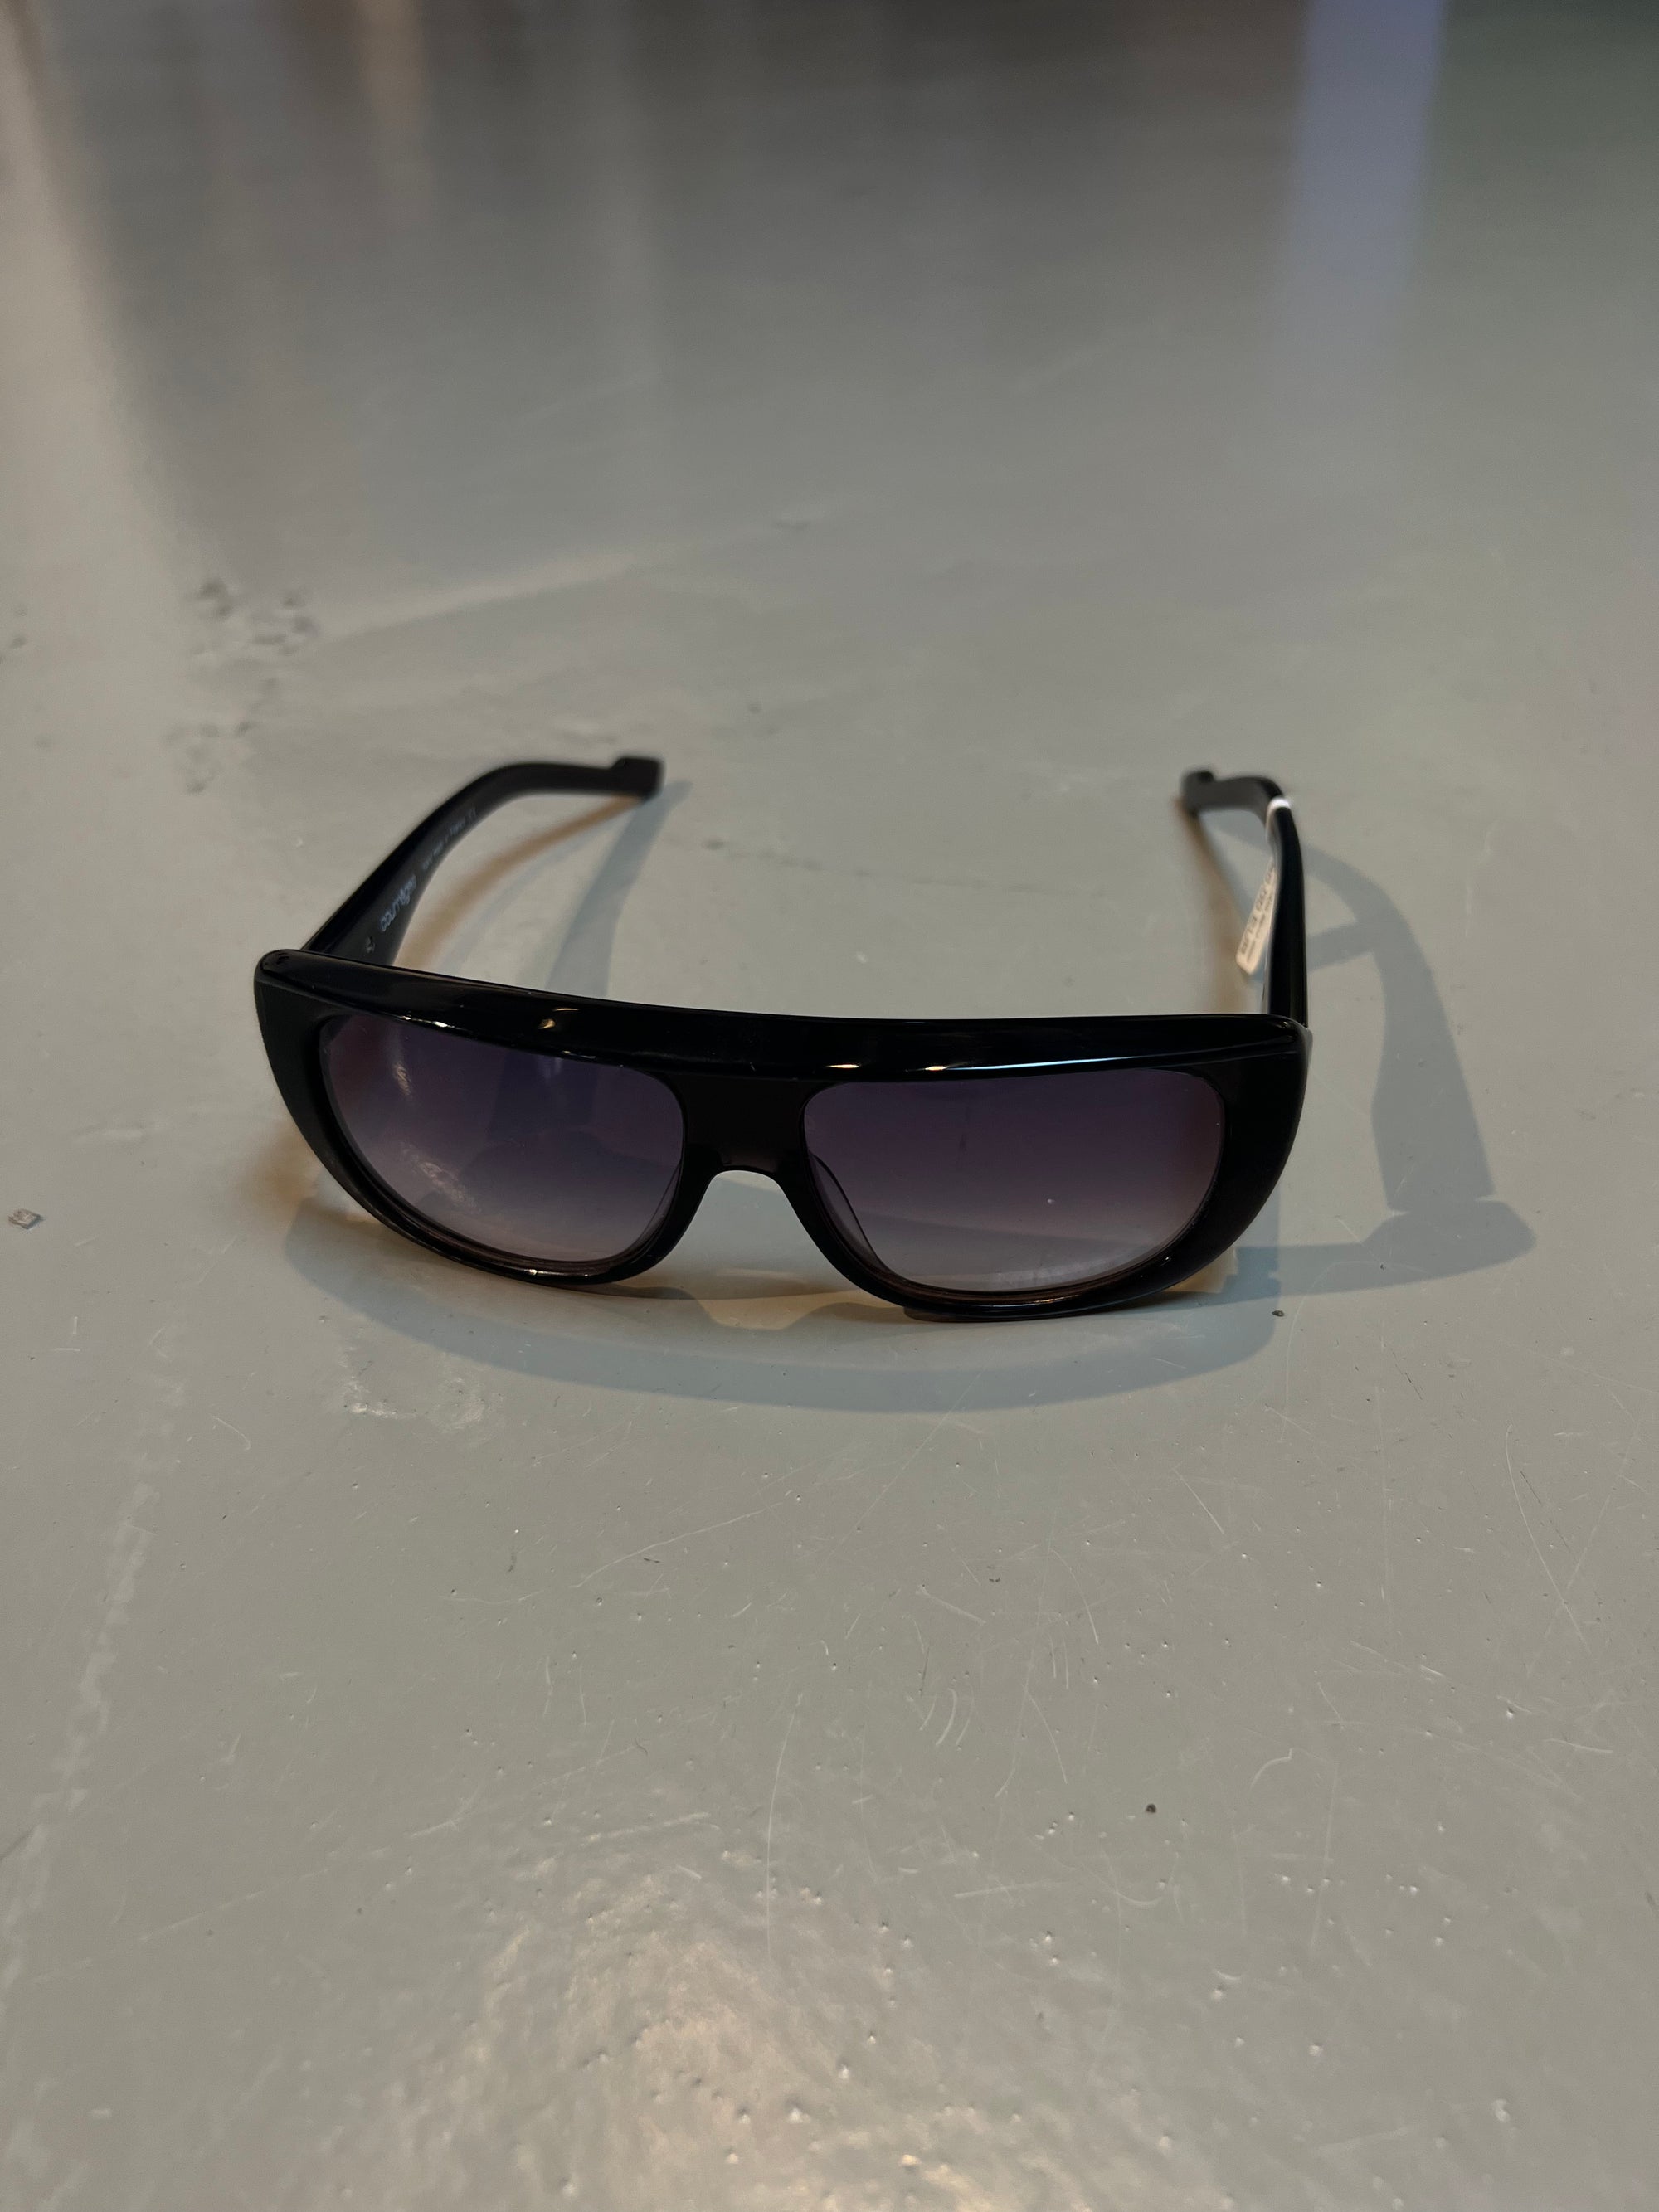 Produktbild einer Alain Mikli Paris Sonnenbrille vor grauem Hintergrund.